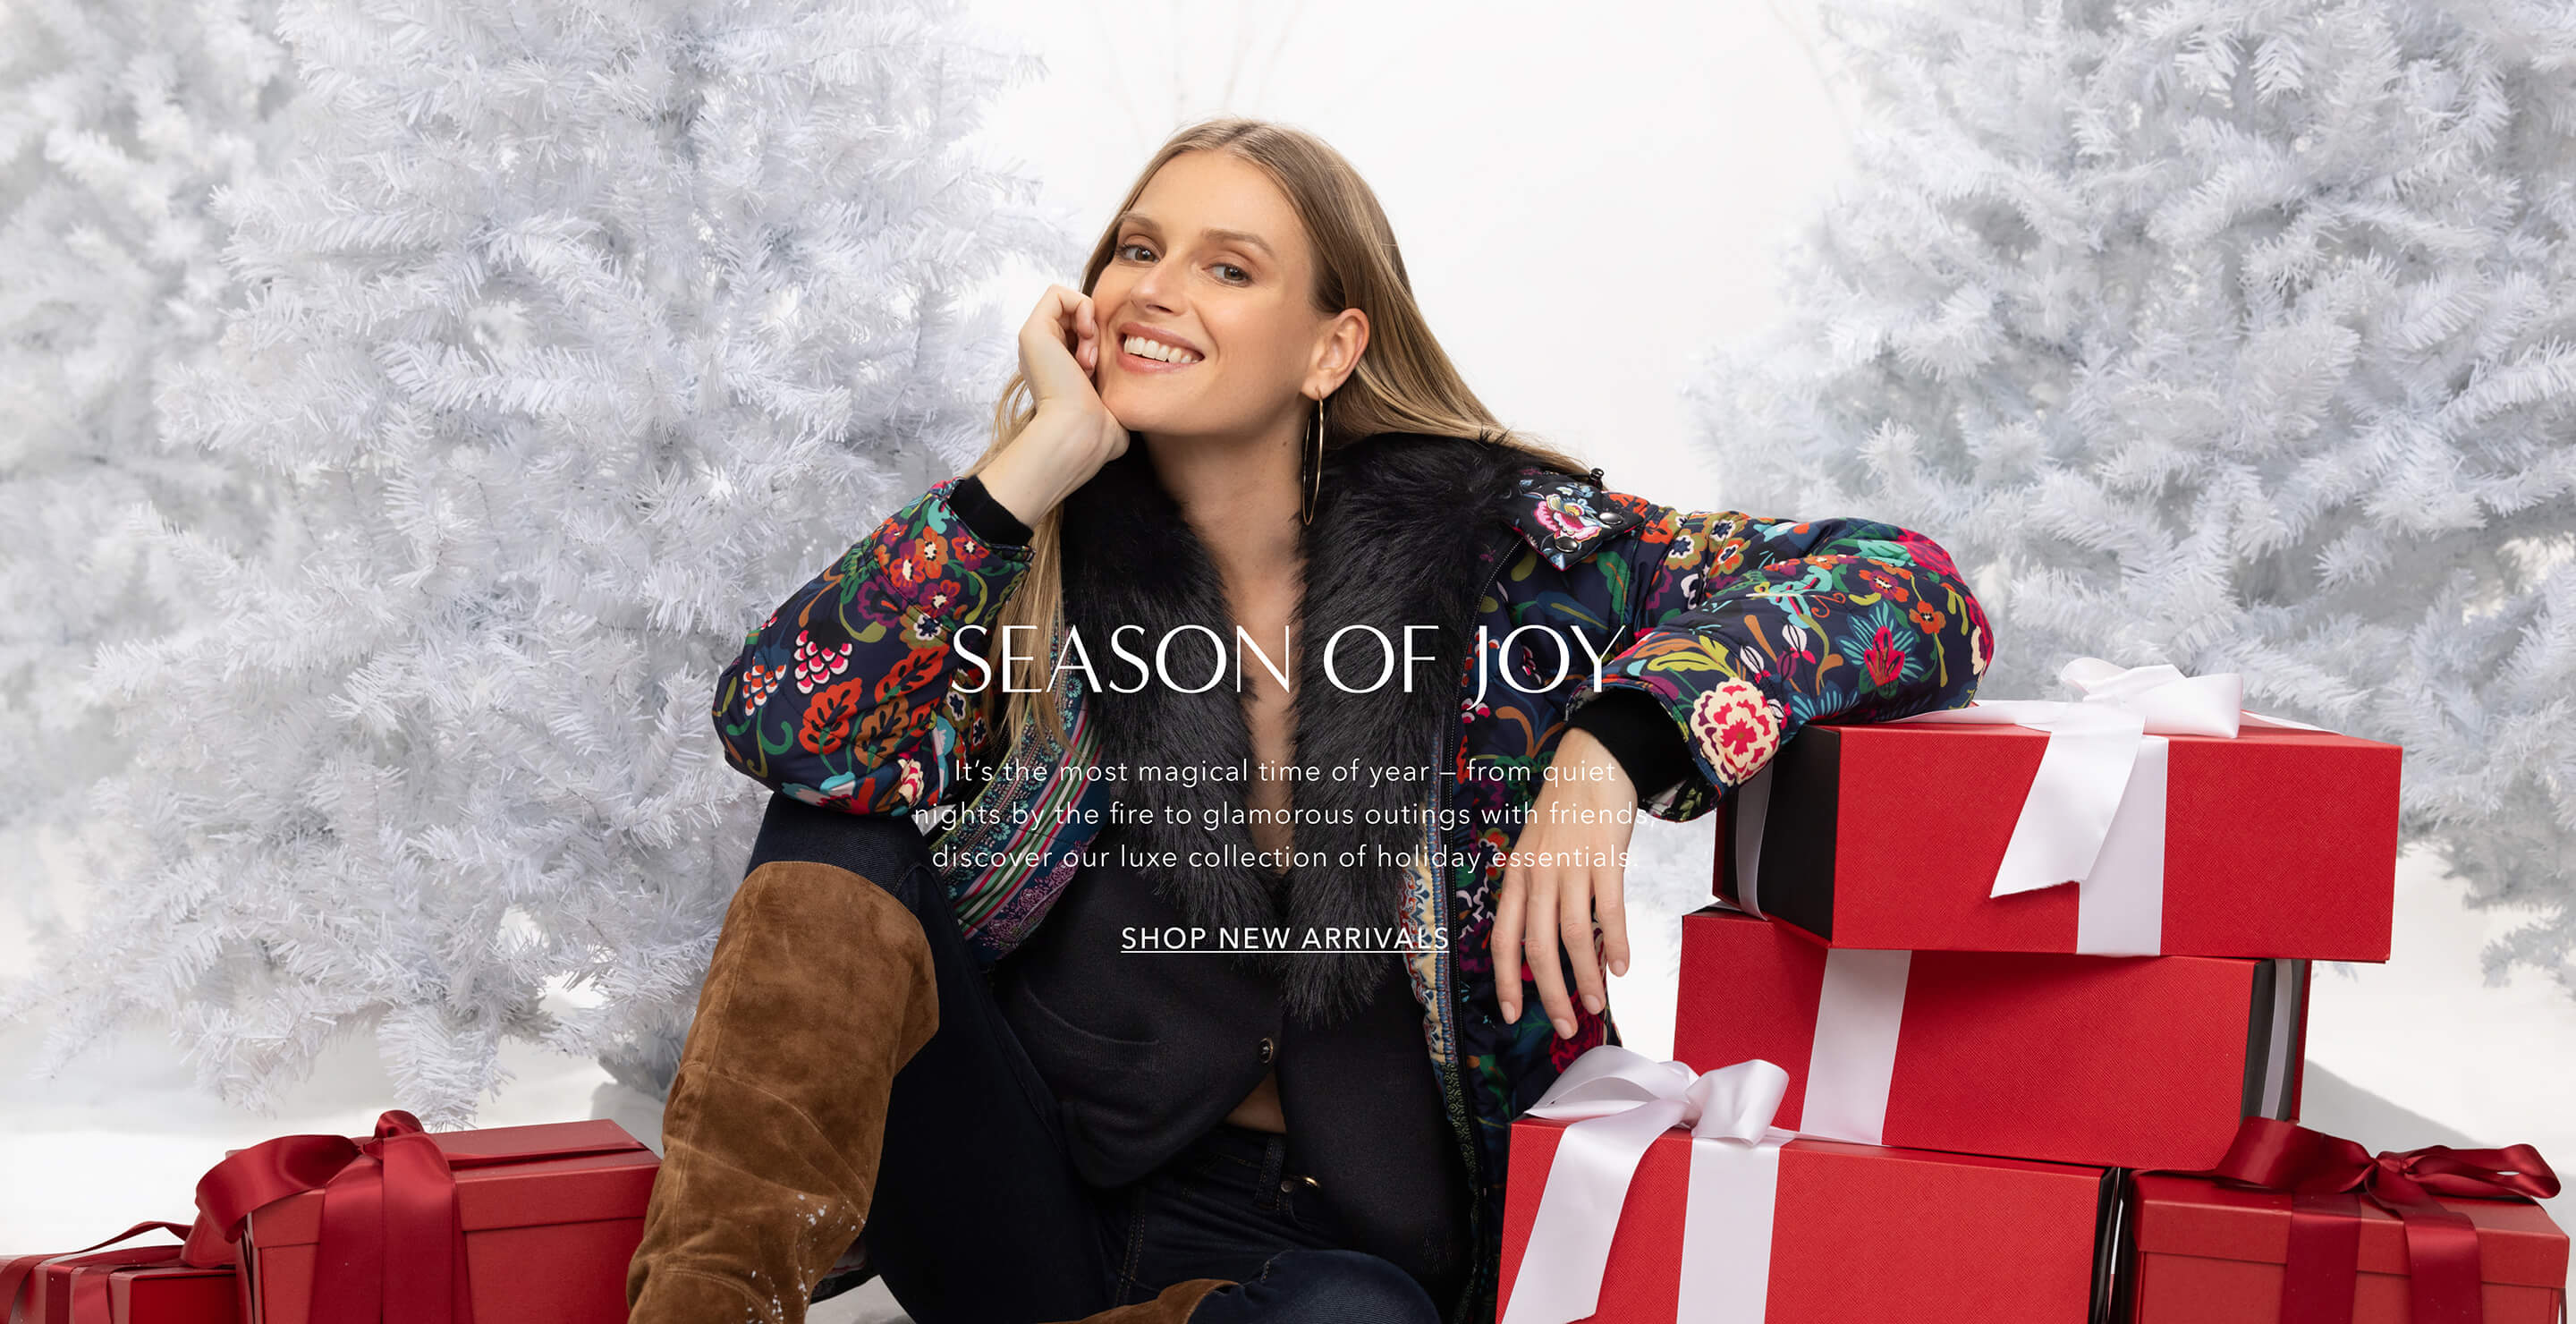 Season of Joy Shop New Arrivals